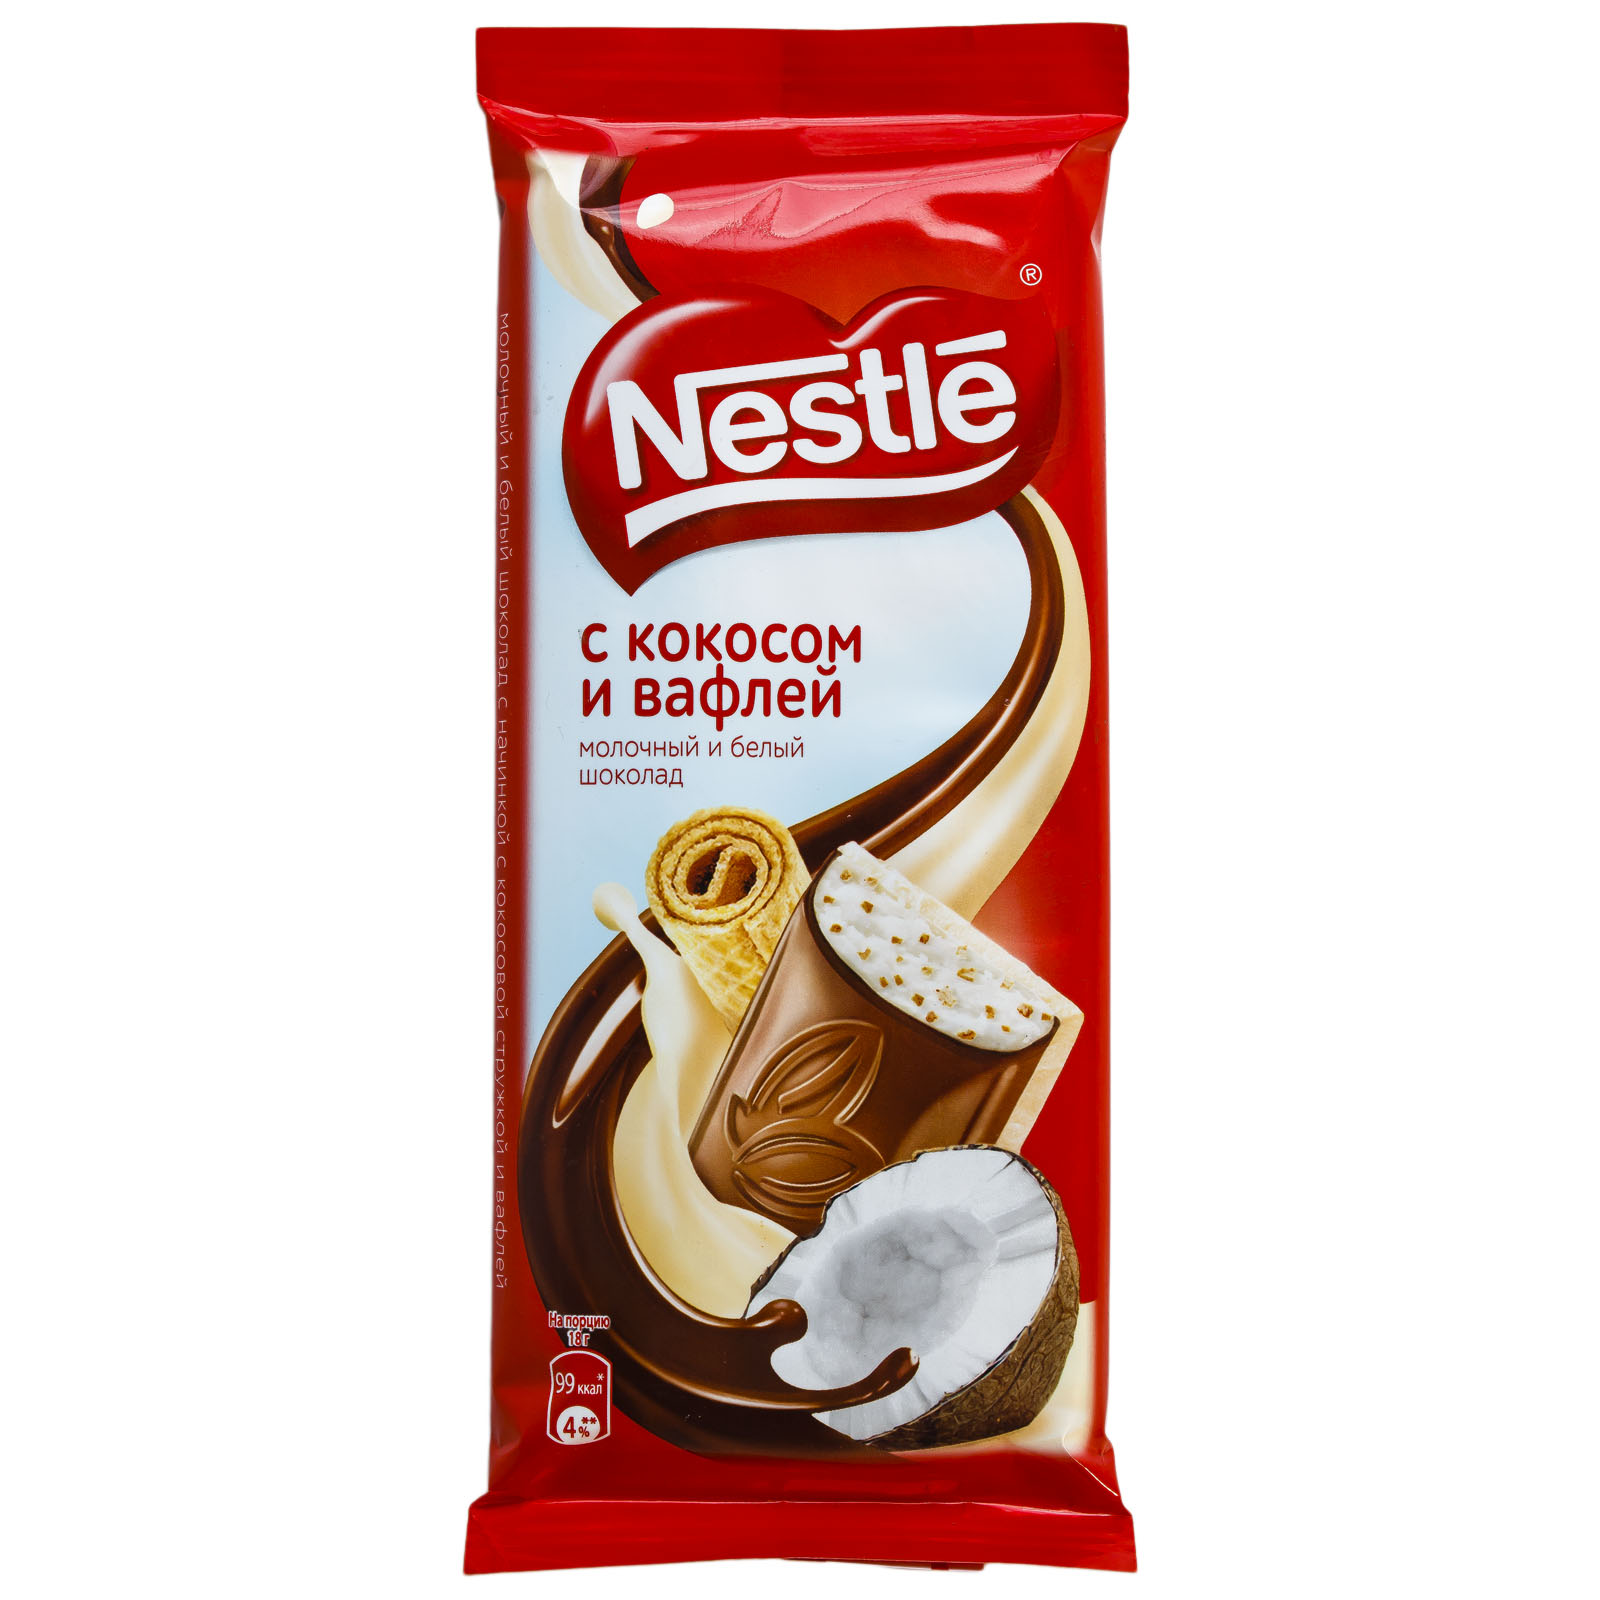 Шоколад Nestle молочный и белый с кокосом и вафлей 90 г